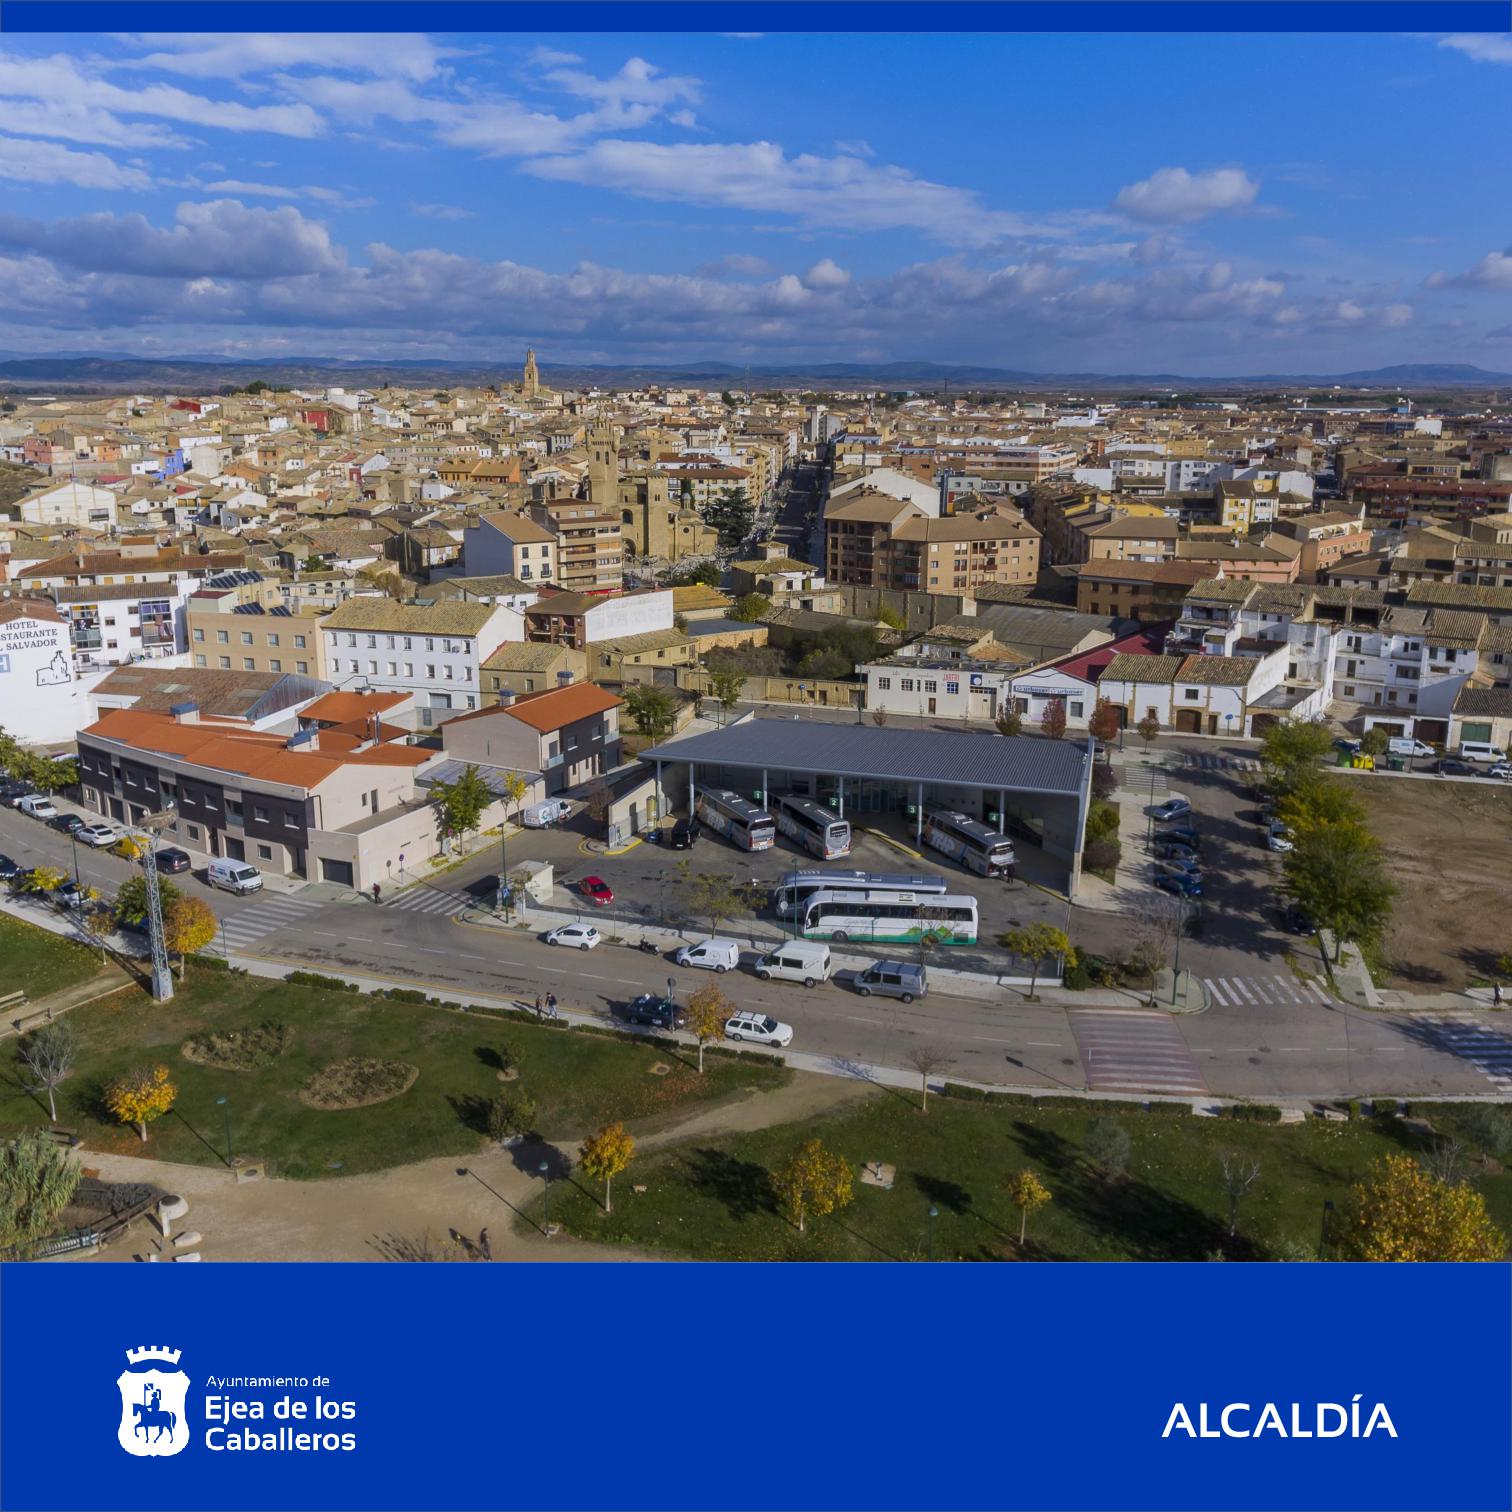 En este momento estás viendo El Ayuntamiento de Ejea destinará 5,6 millones de euros para fomentar el desarrollo social y económico del municipio